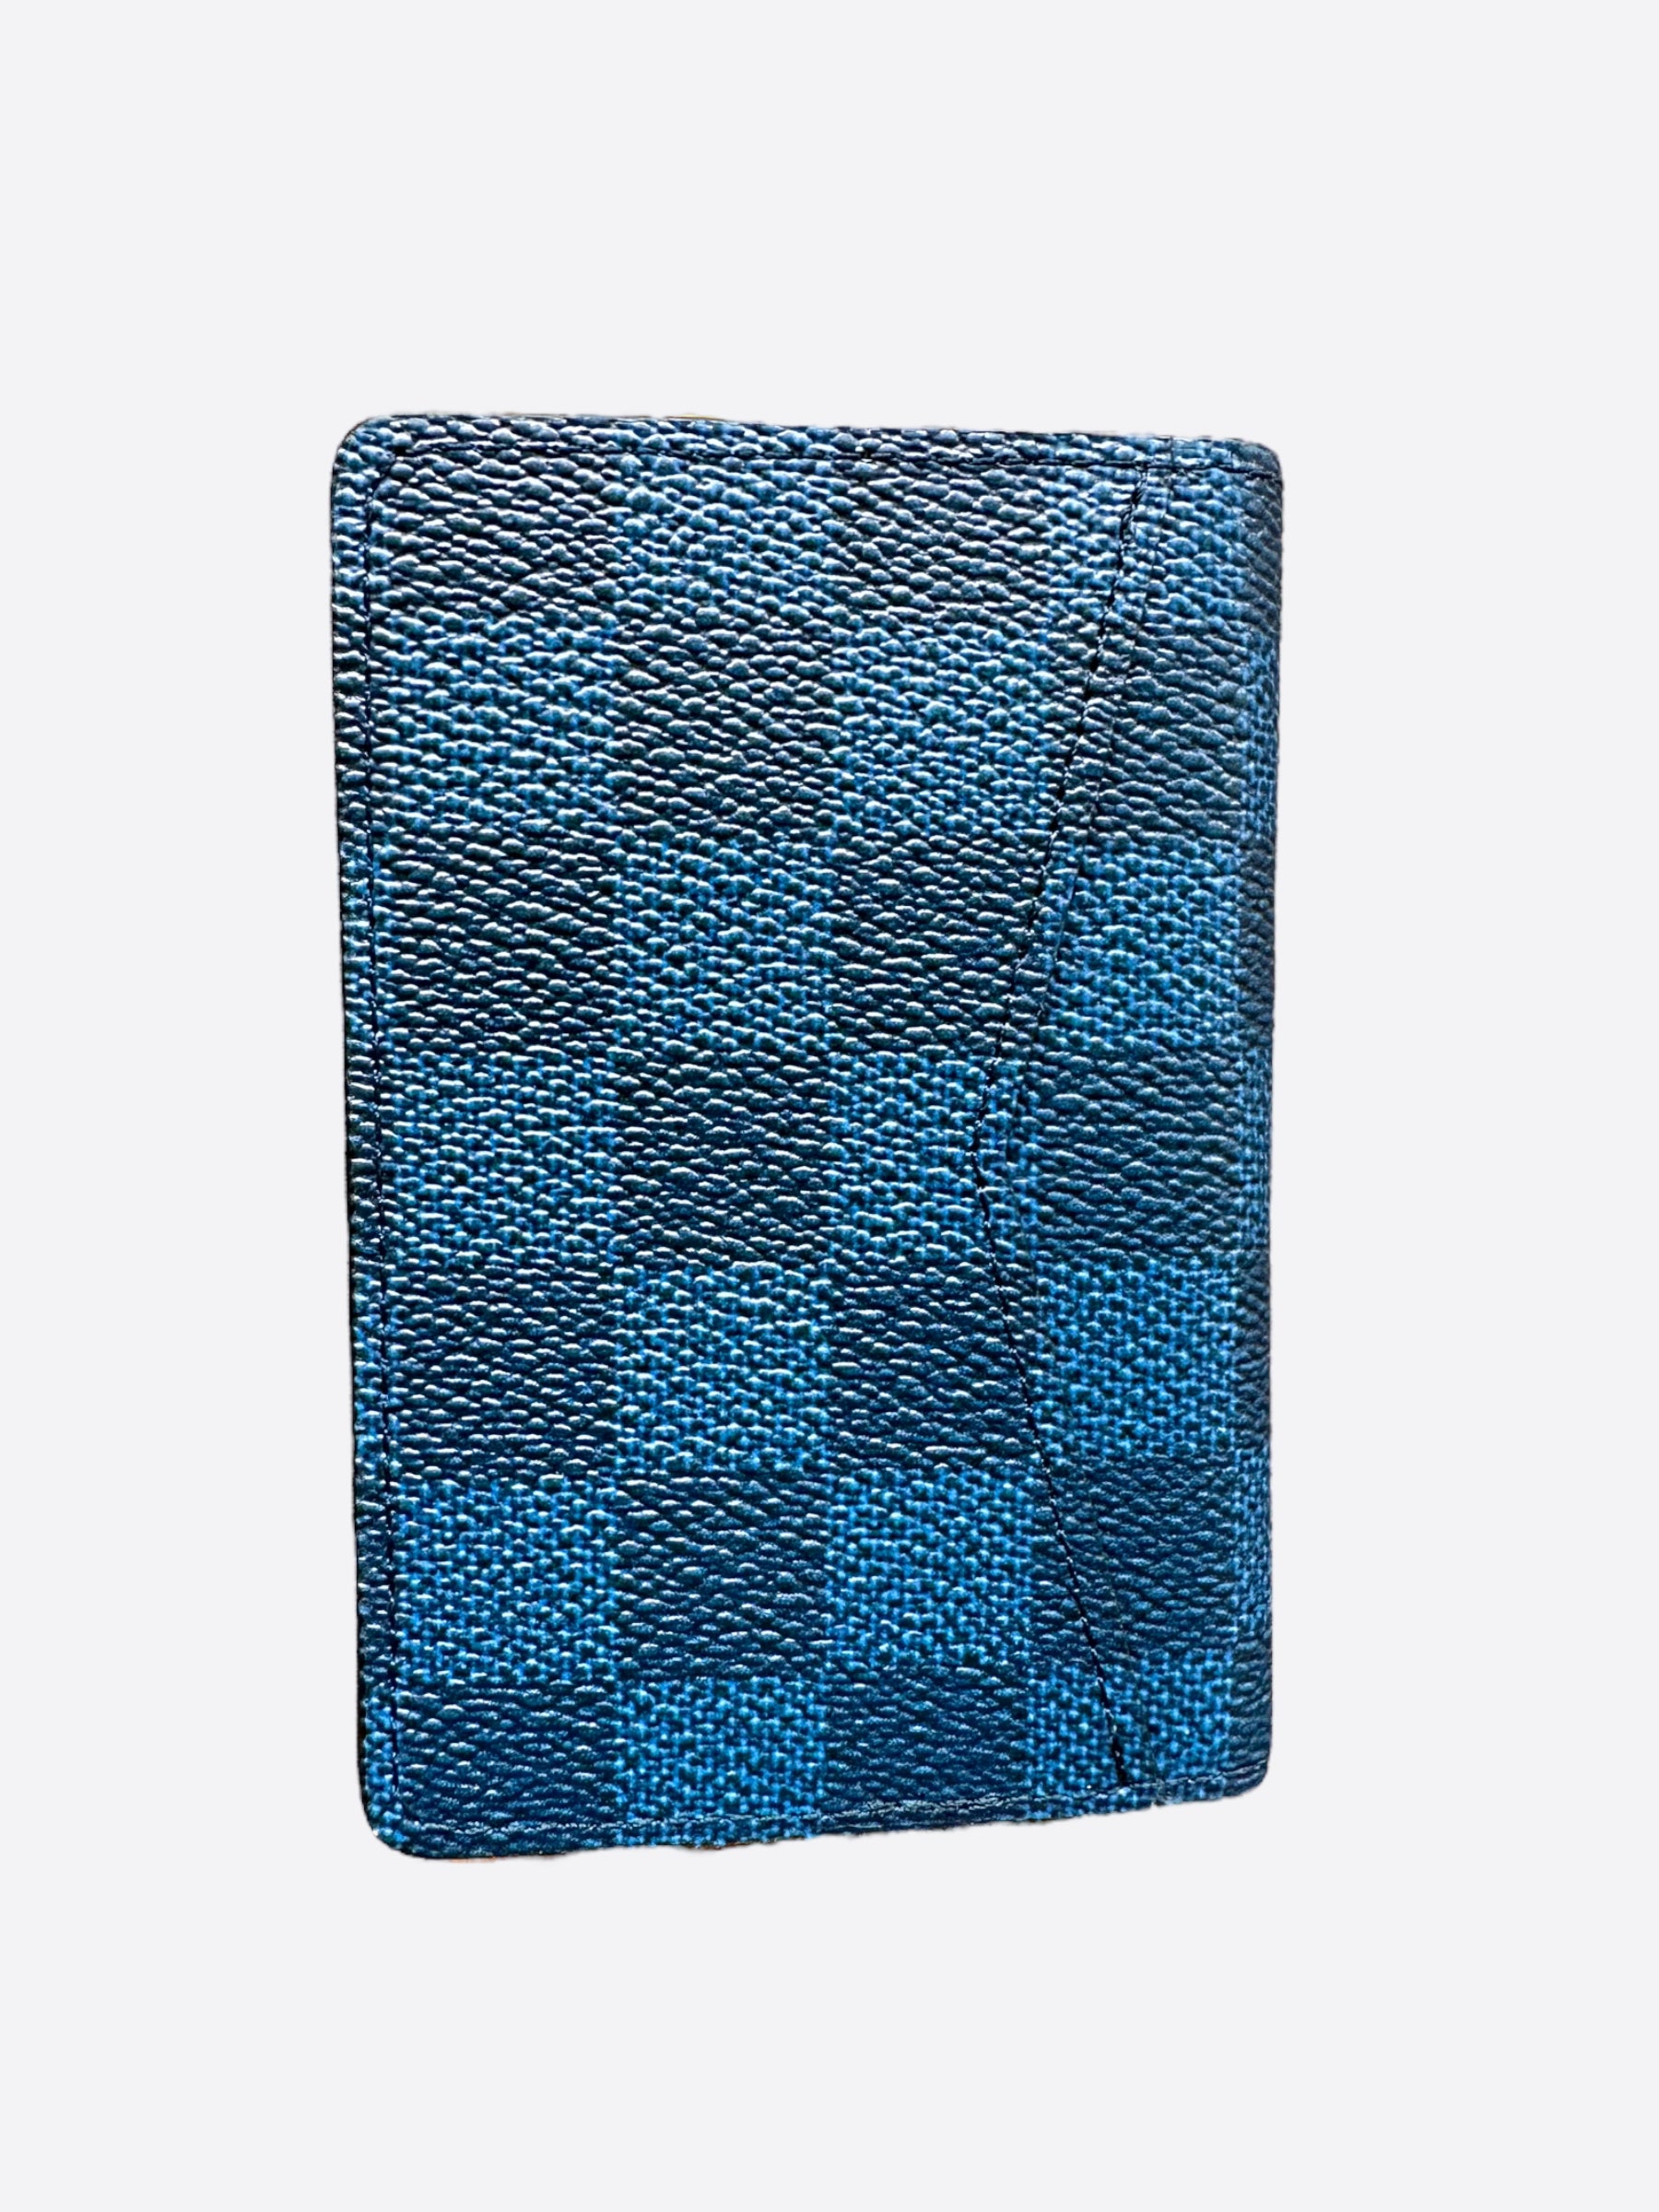 Louis Vuitton Pocket Organizer Damier Azur NM White/Blue in Canvas - US